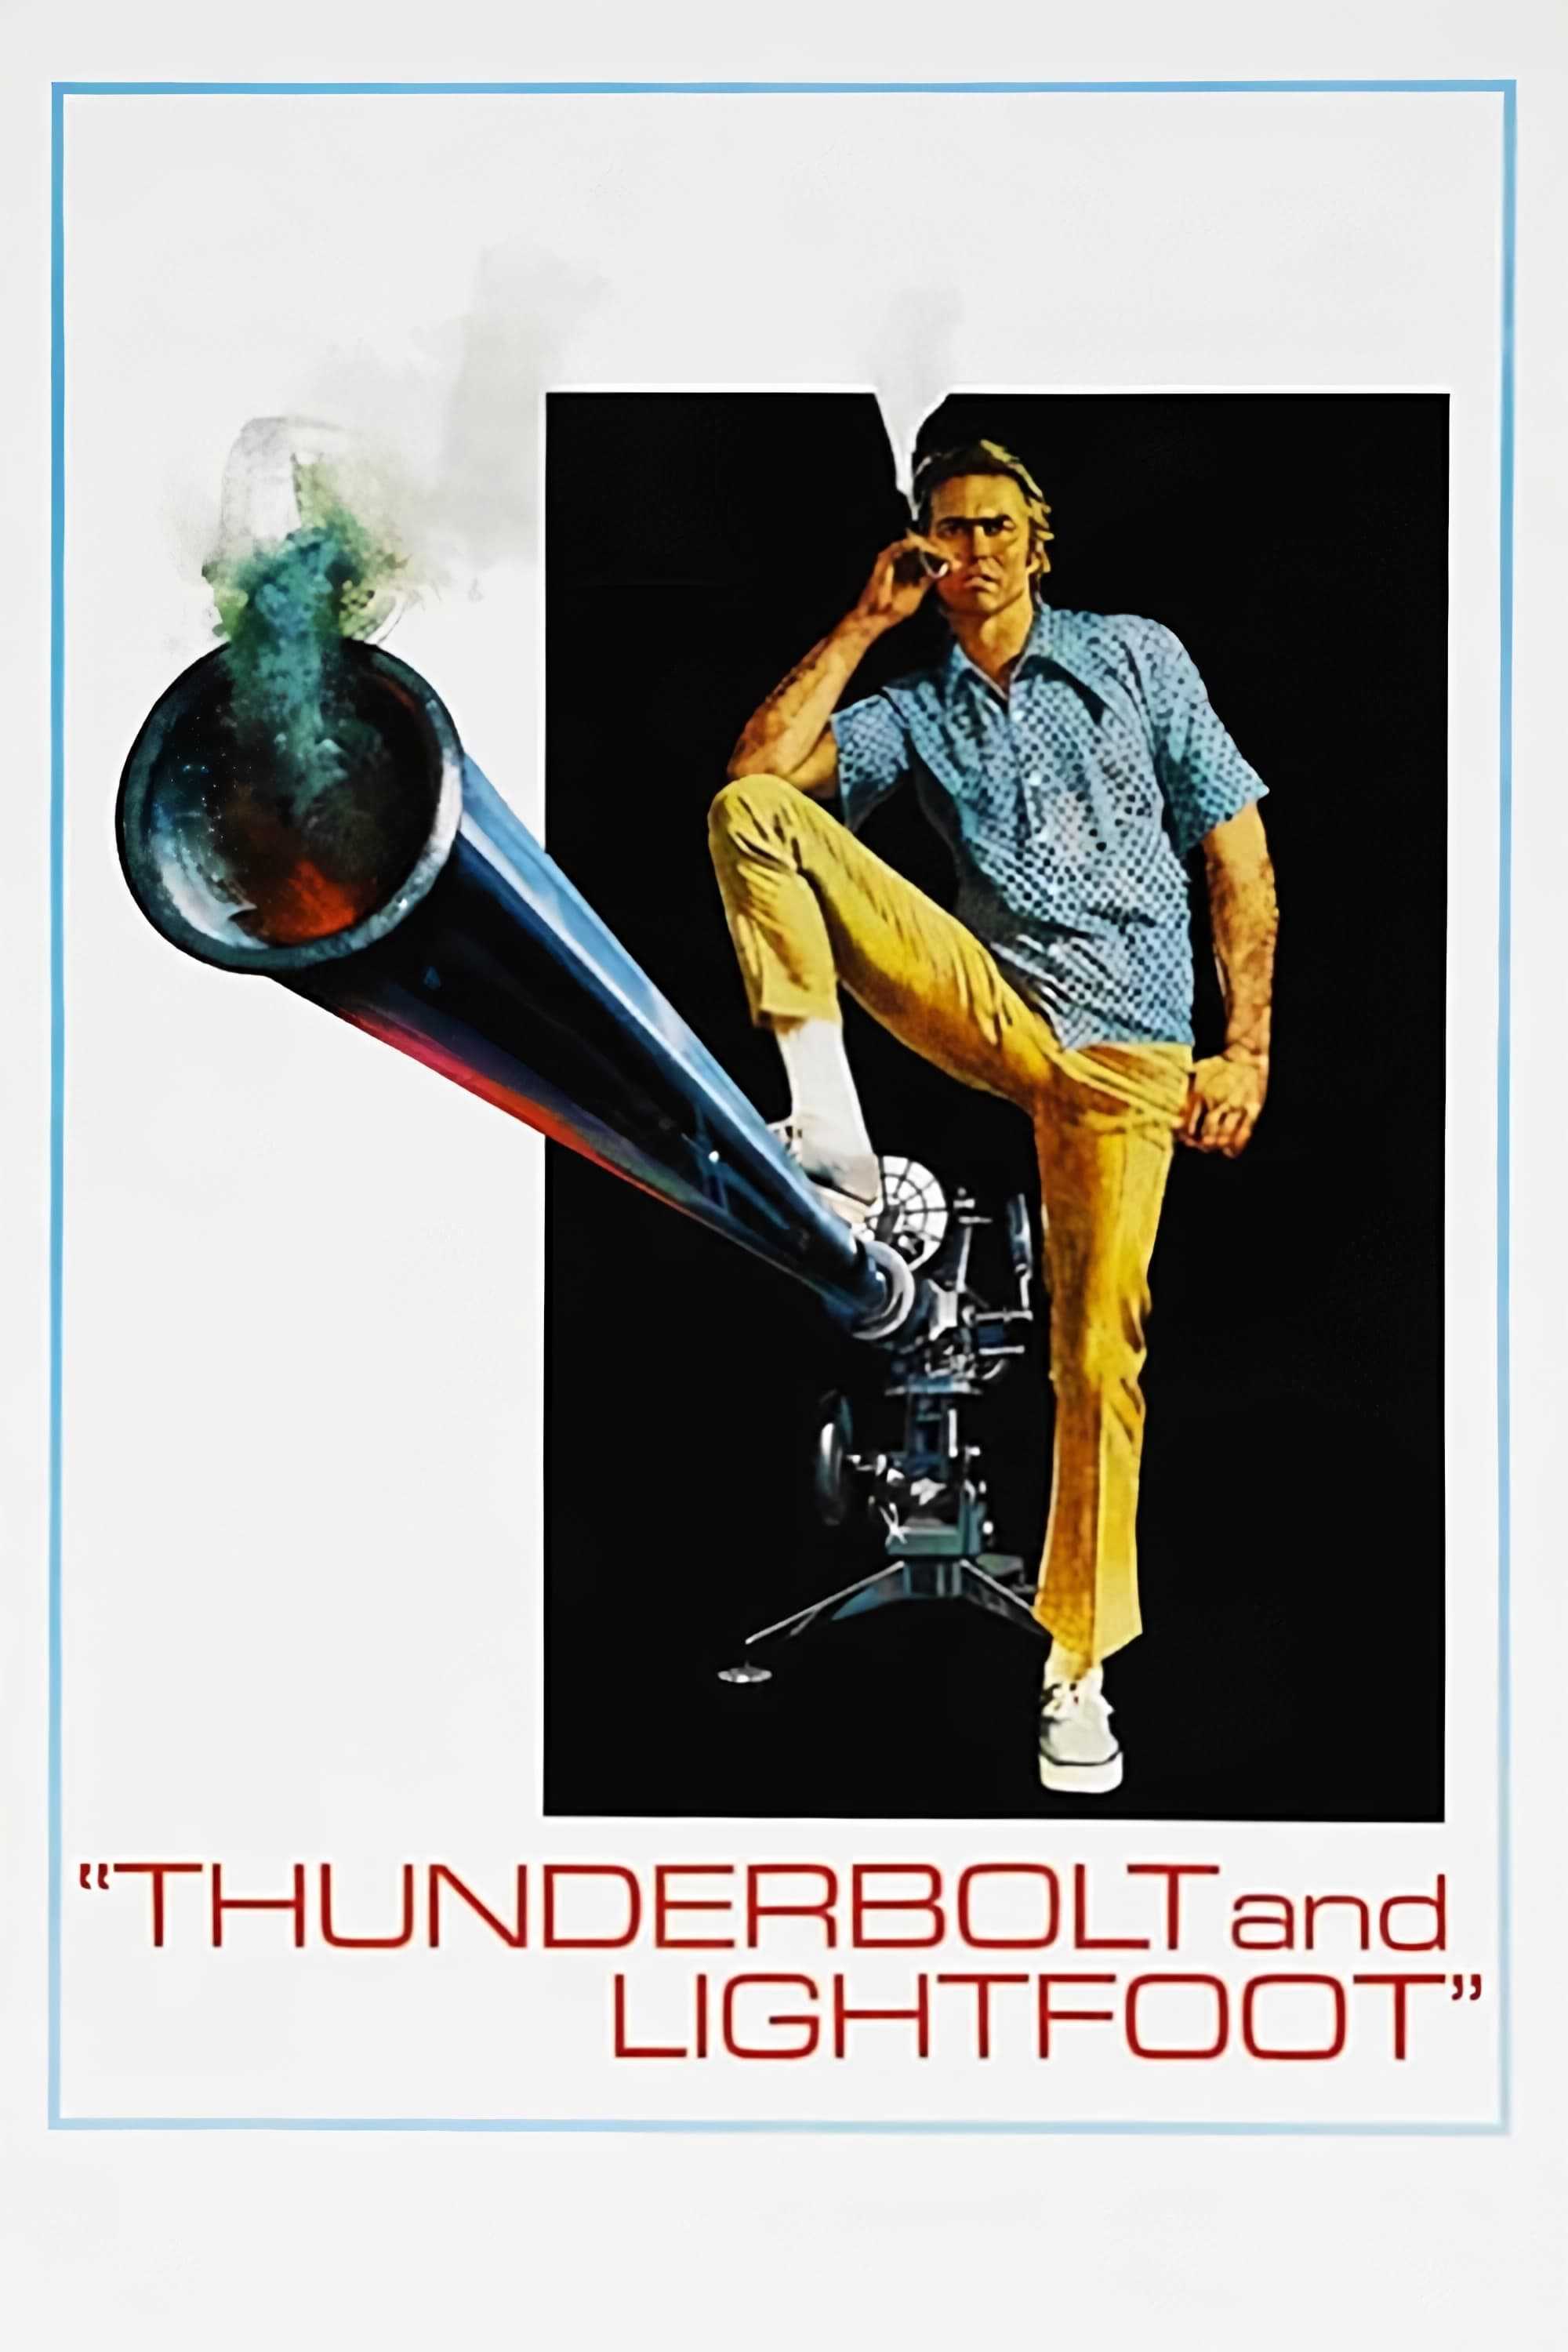 Thunderbolt and lightfoot - Thunderbolt và lightfoot